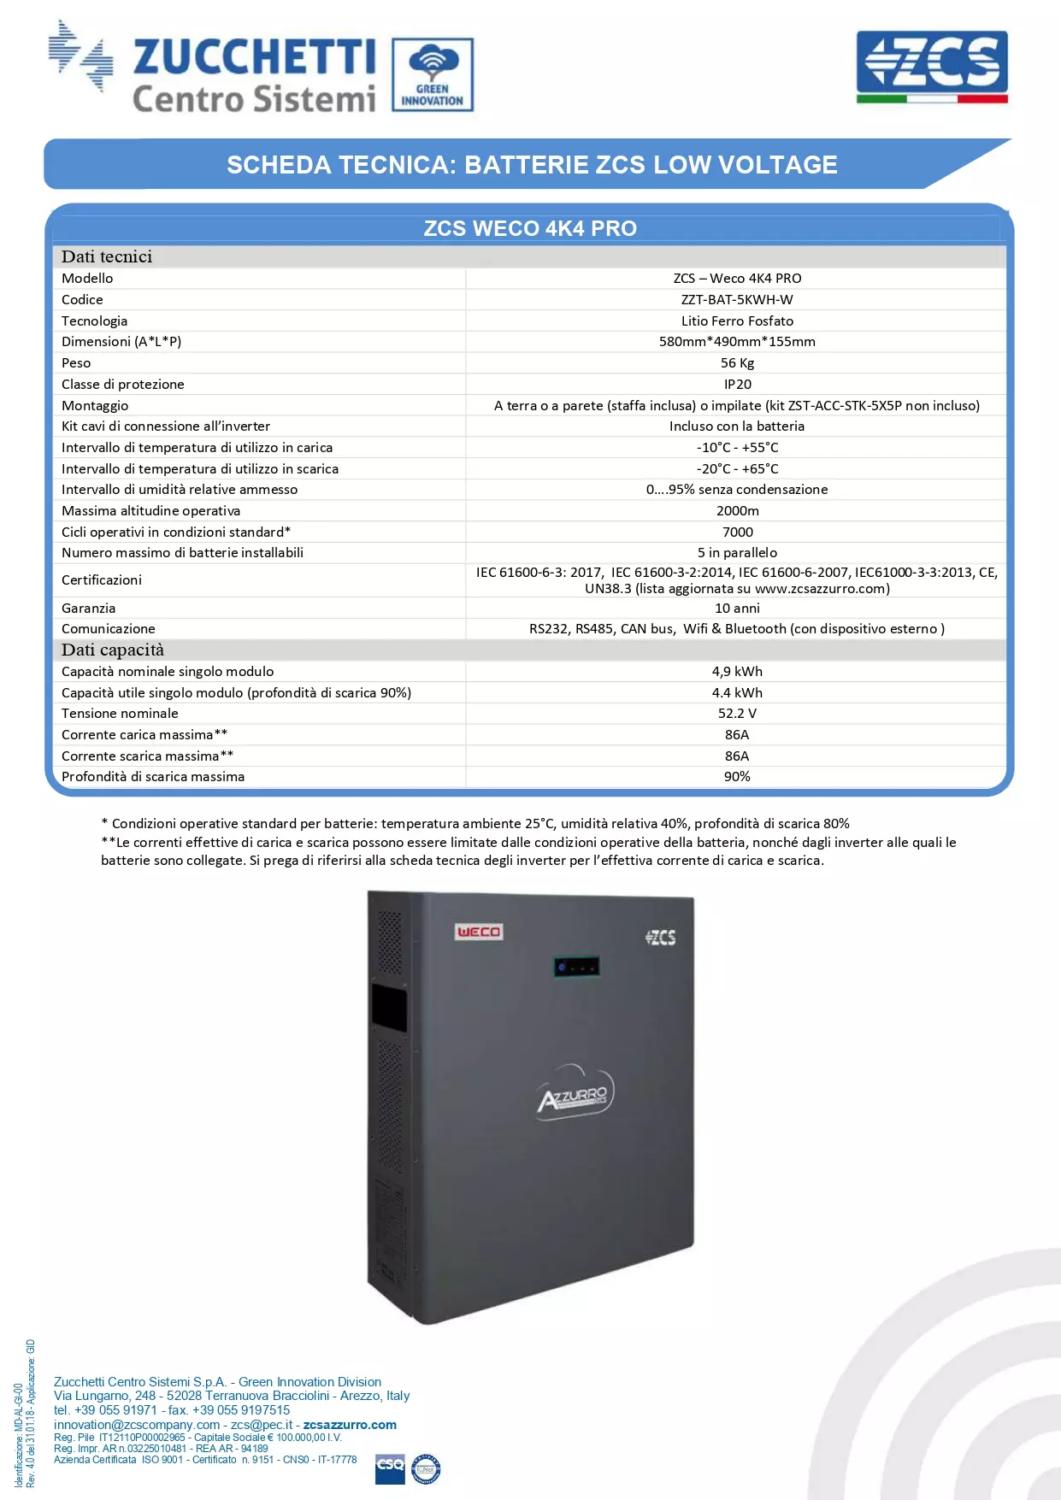 WECO 4k4 PRO Specifiche tecniche batteria LV al litio ZCS per impianti fotovoltaici con sistemi di accumulo